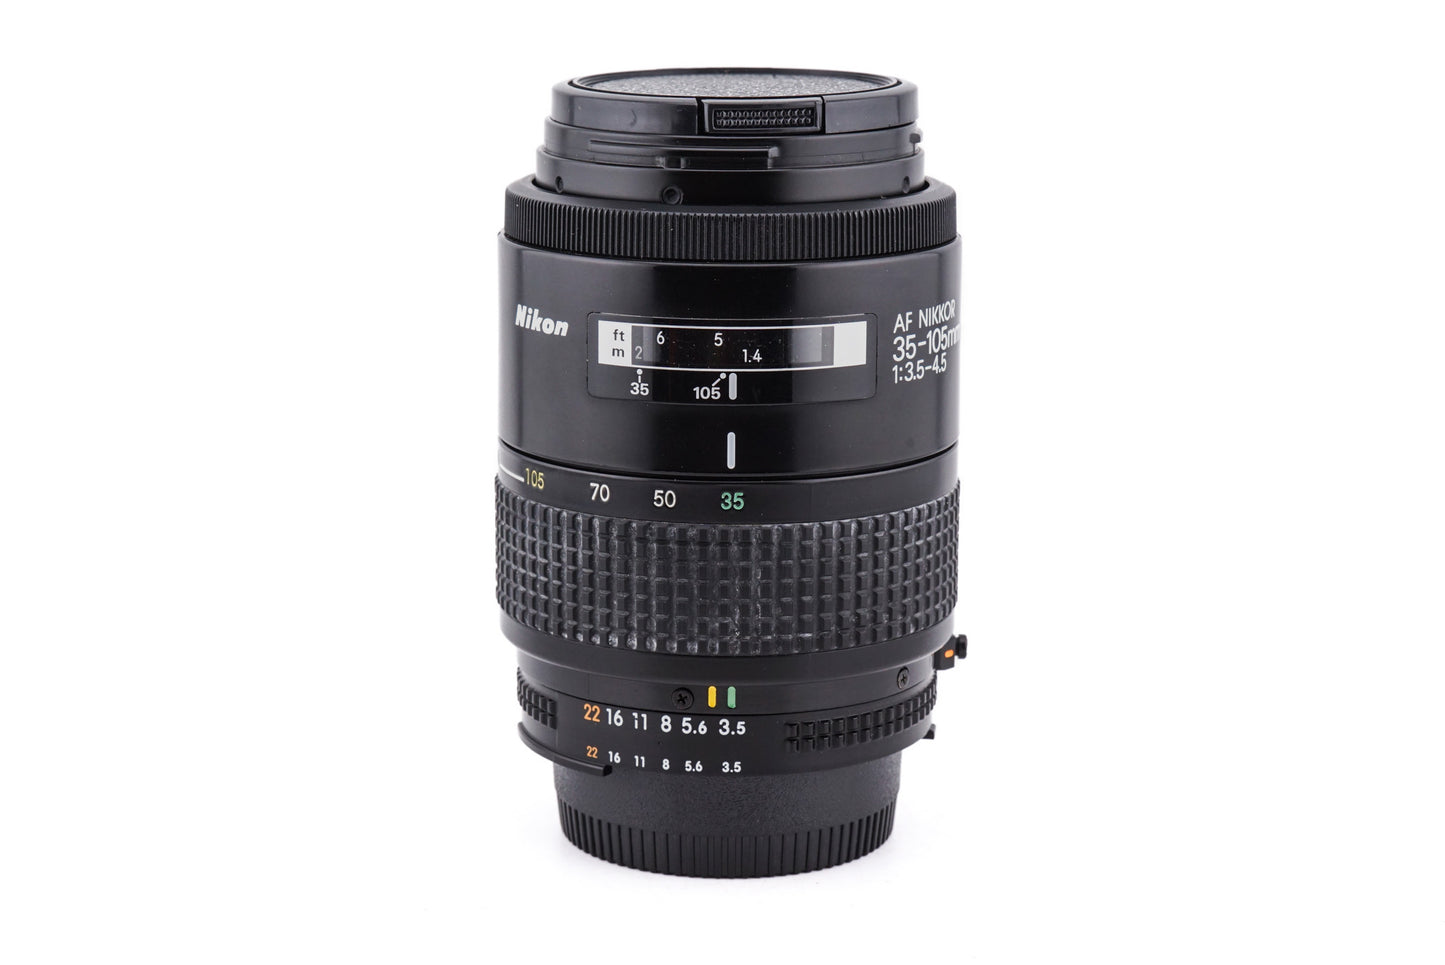 Nikon 35-105mm f3.5-4.5 AF Nikkor - Lens